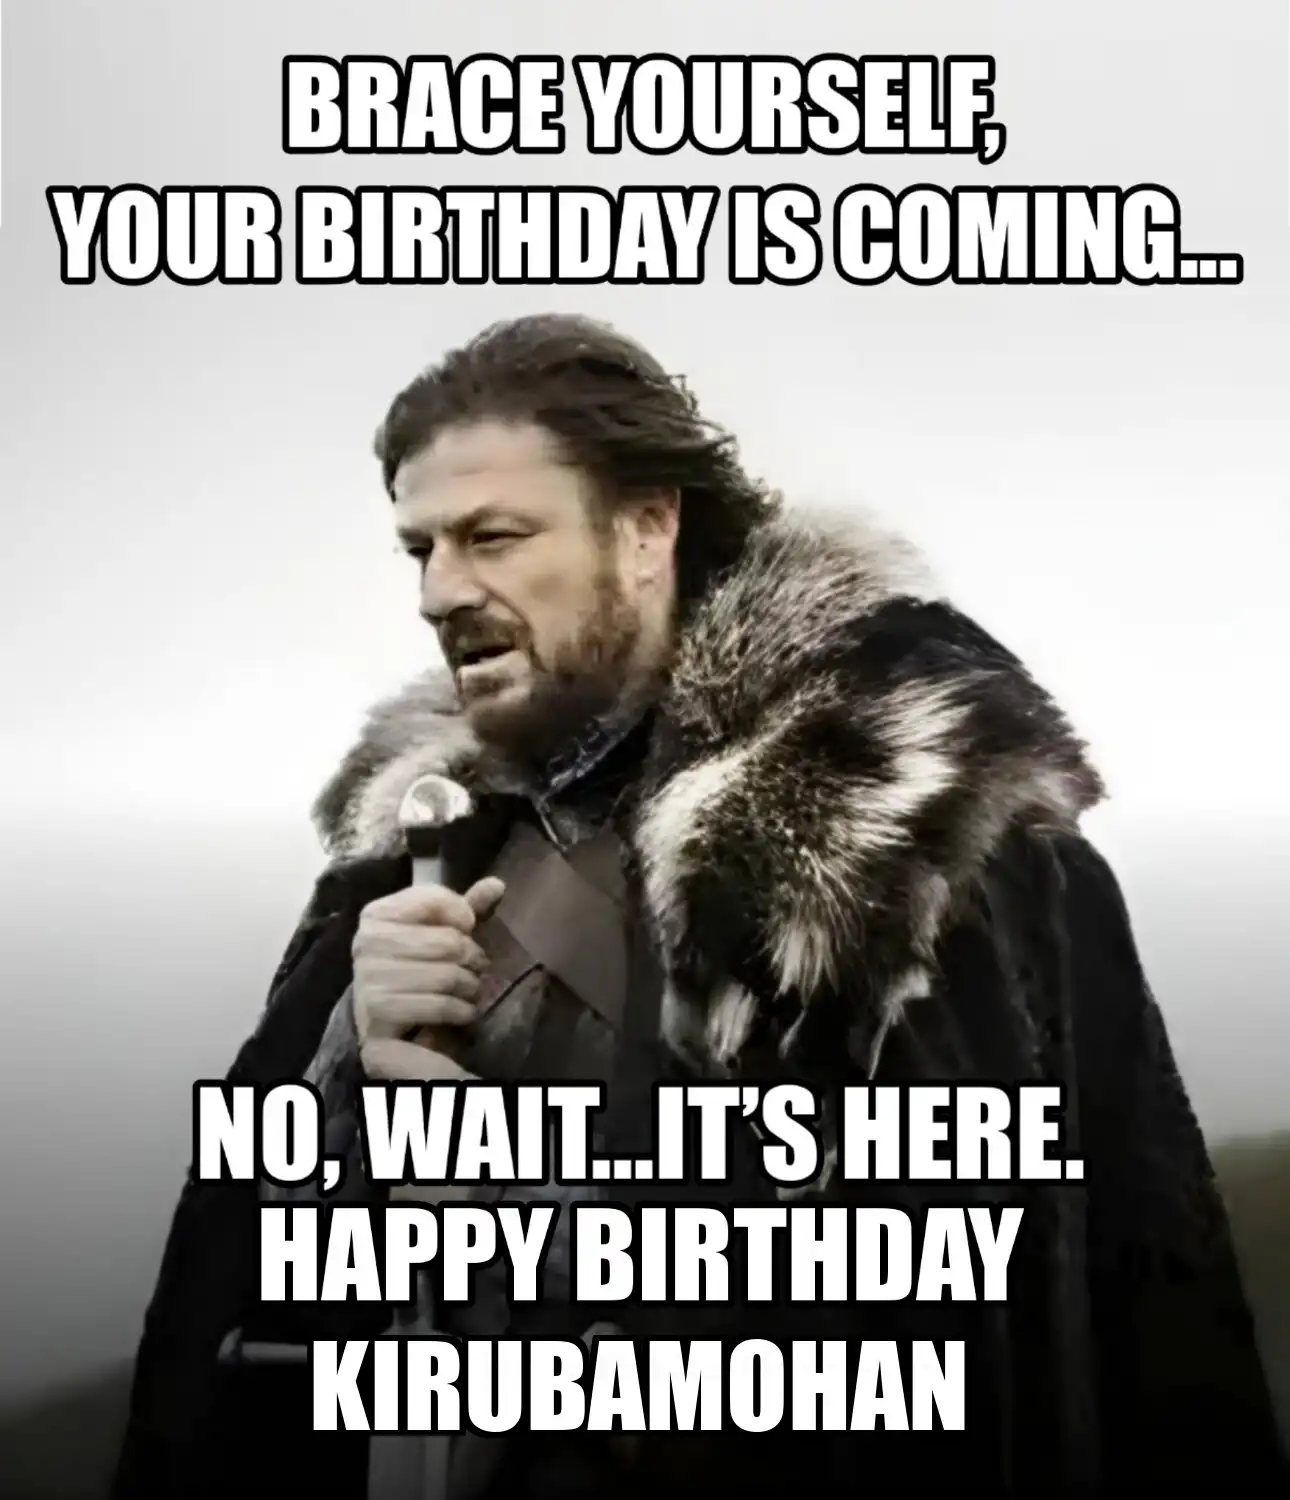 Happy Birthday Kirubamohan Brace Yourself Your Birthday Is Coming Meme